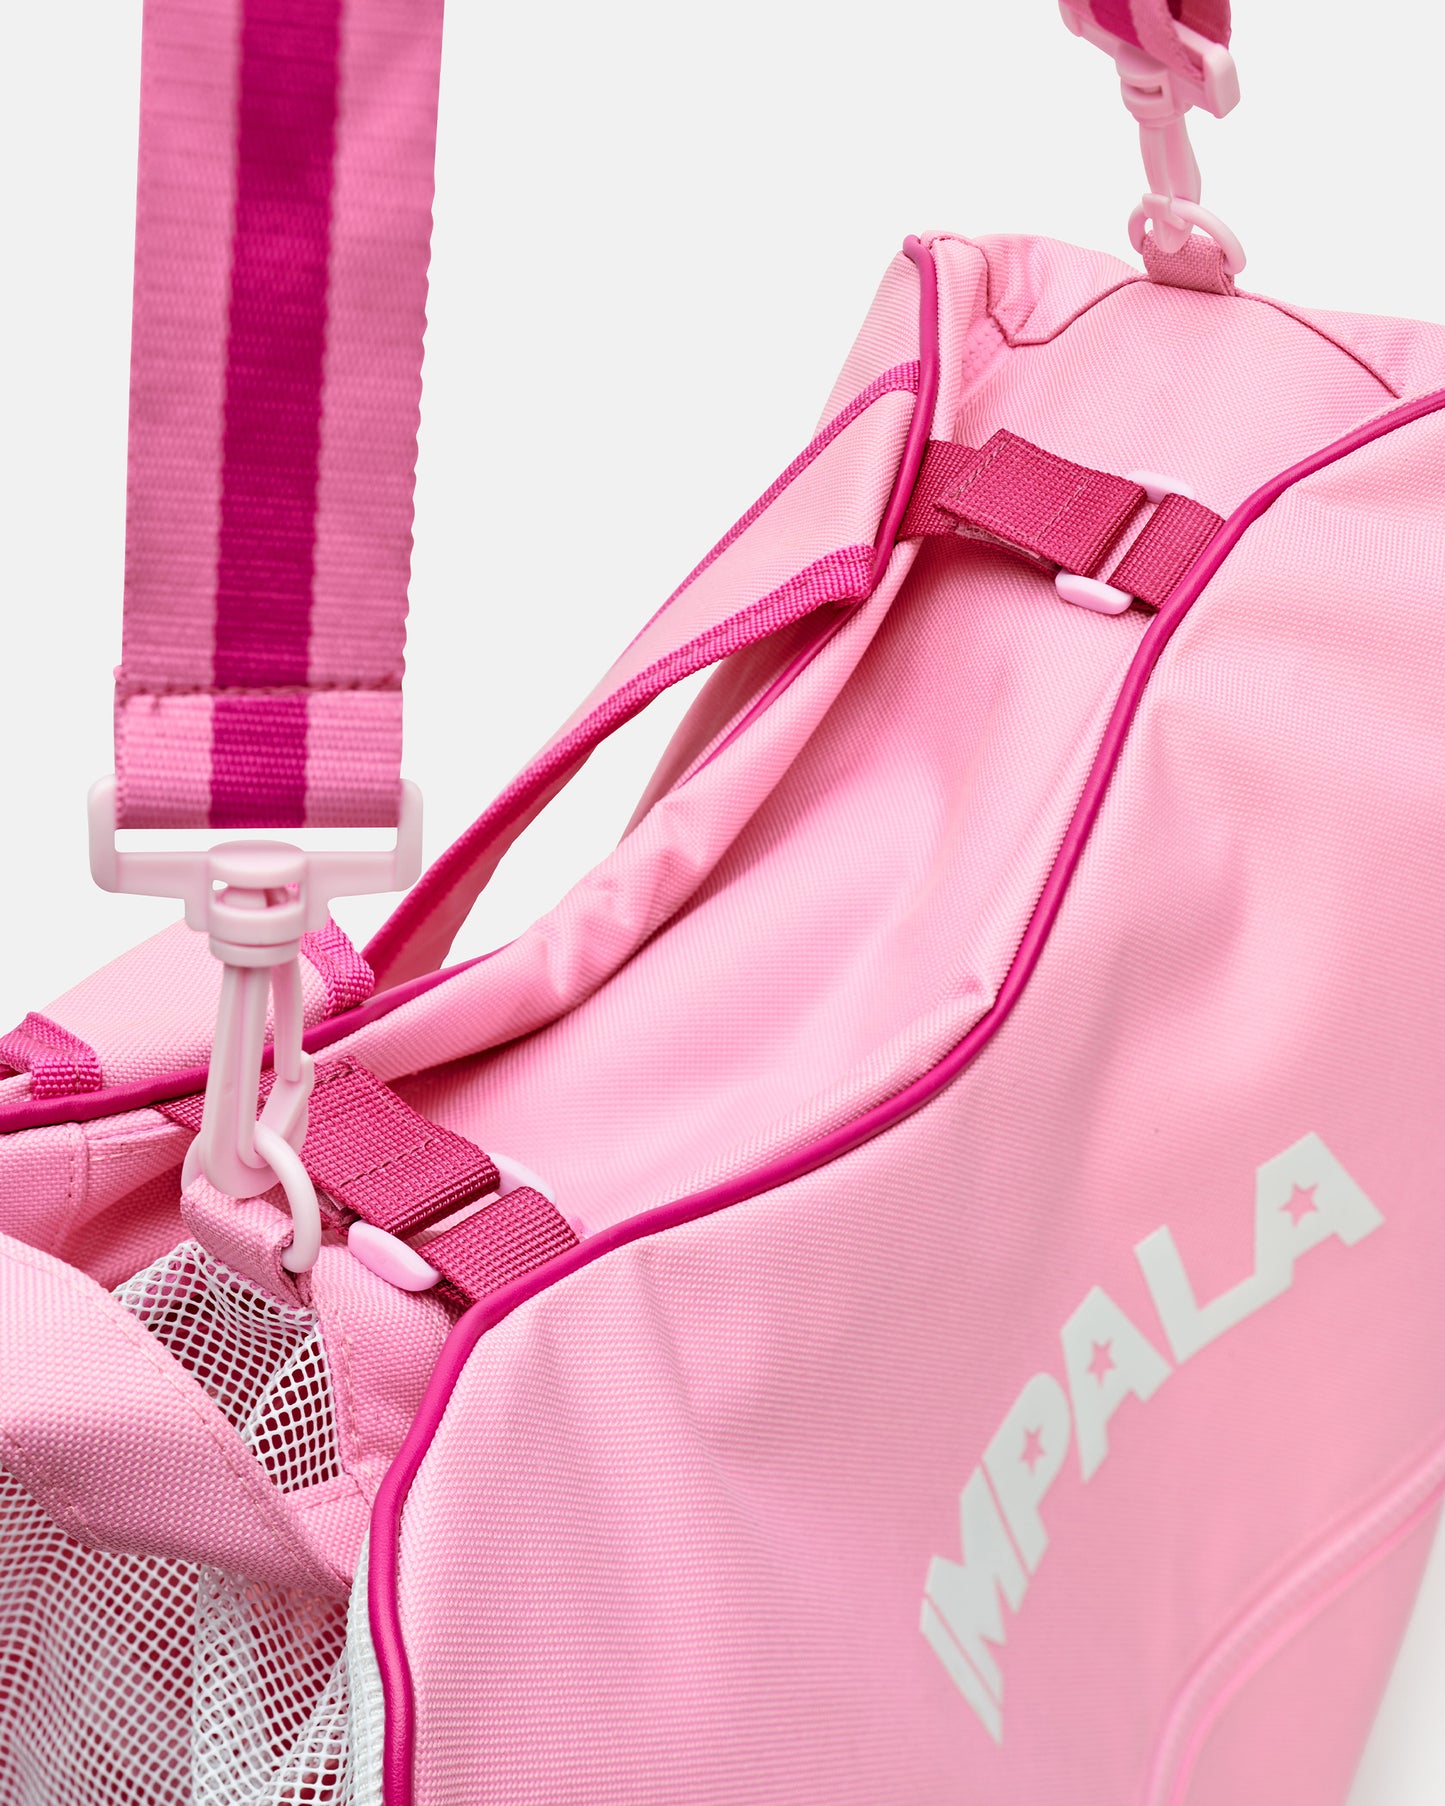 top detail of Impala Skate Bag - Pink